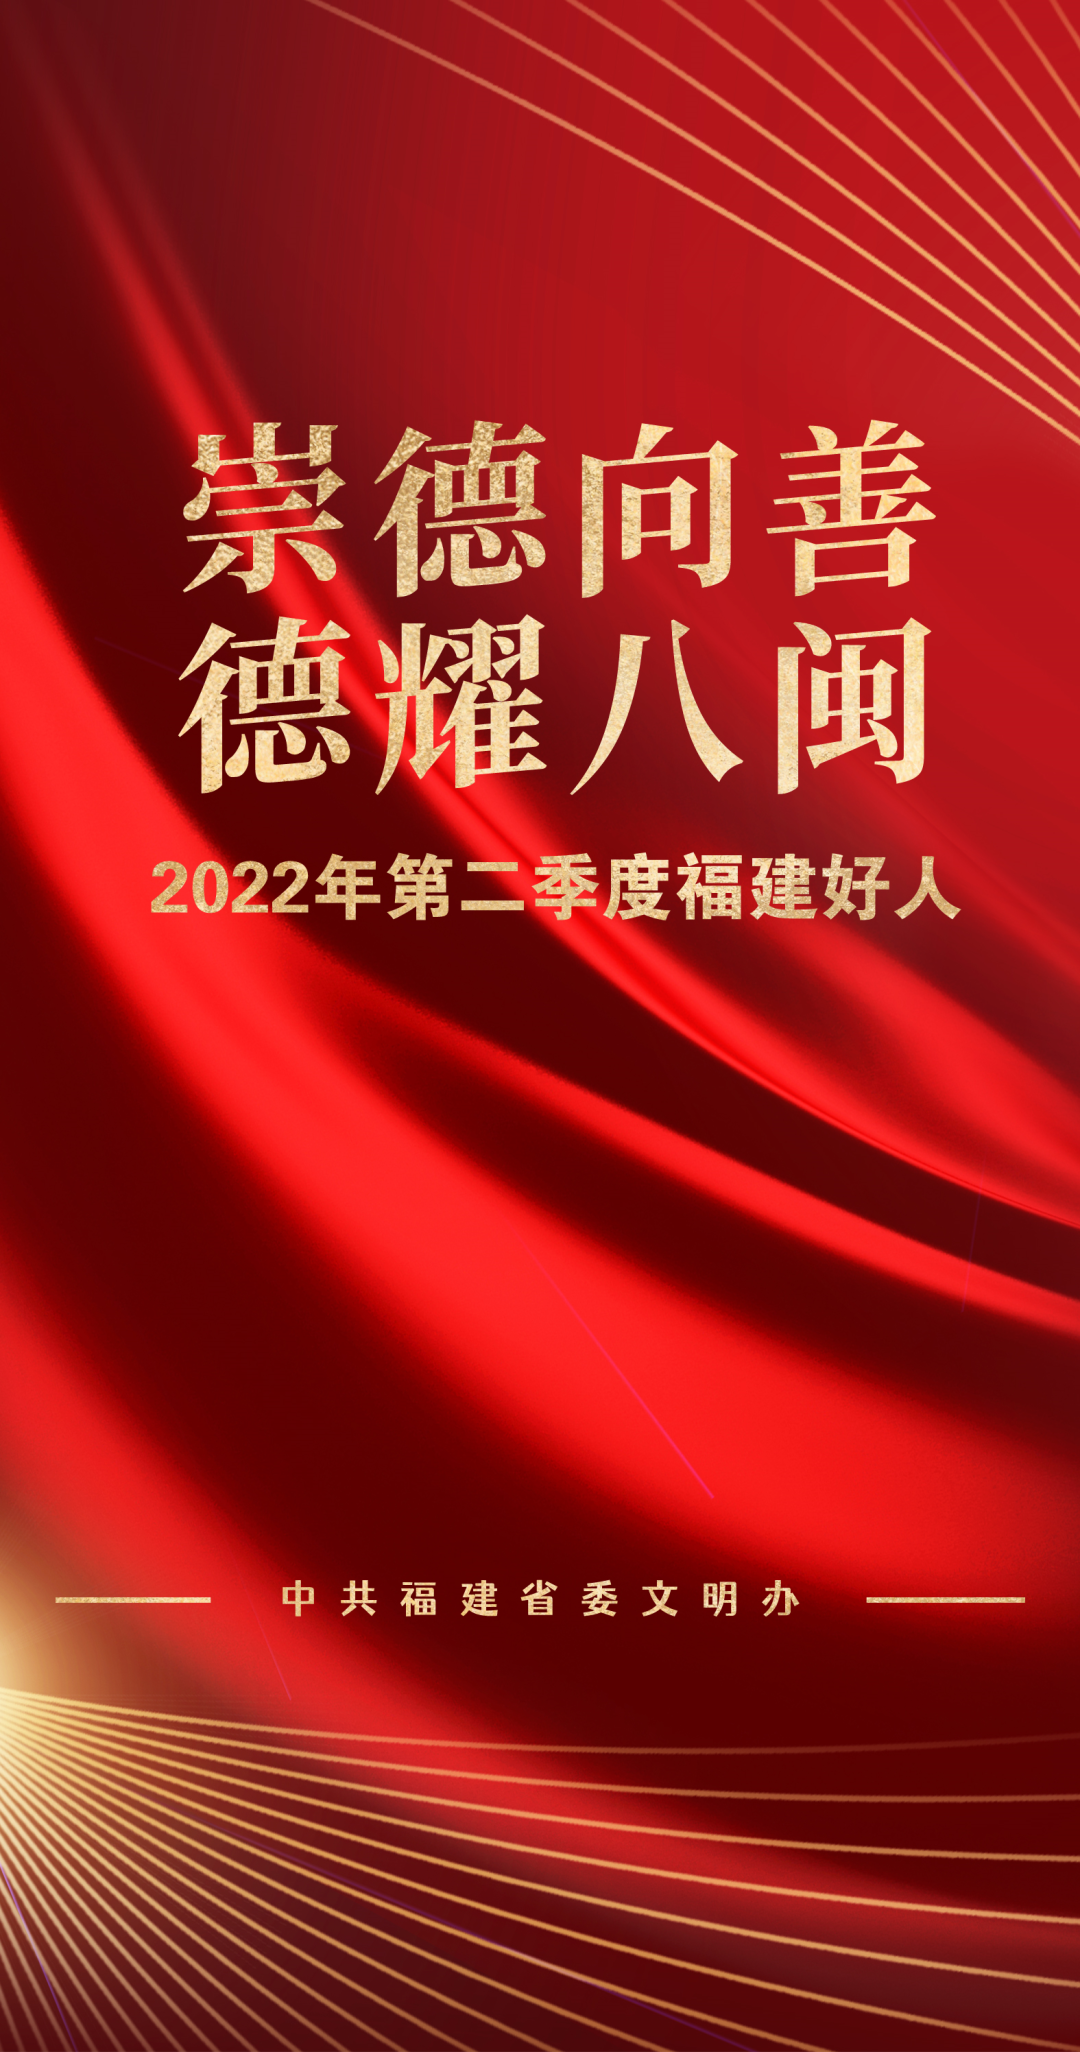 2022年第二季度“福建好人”莫良明(图7)